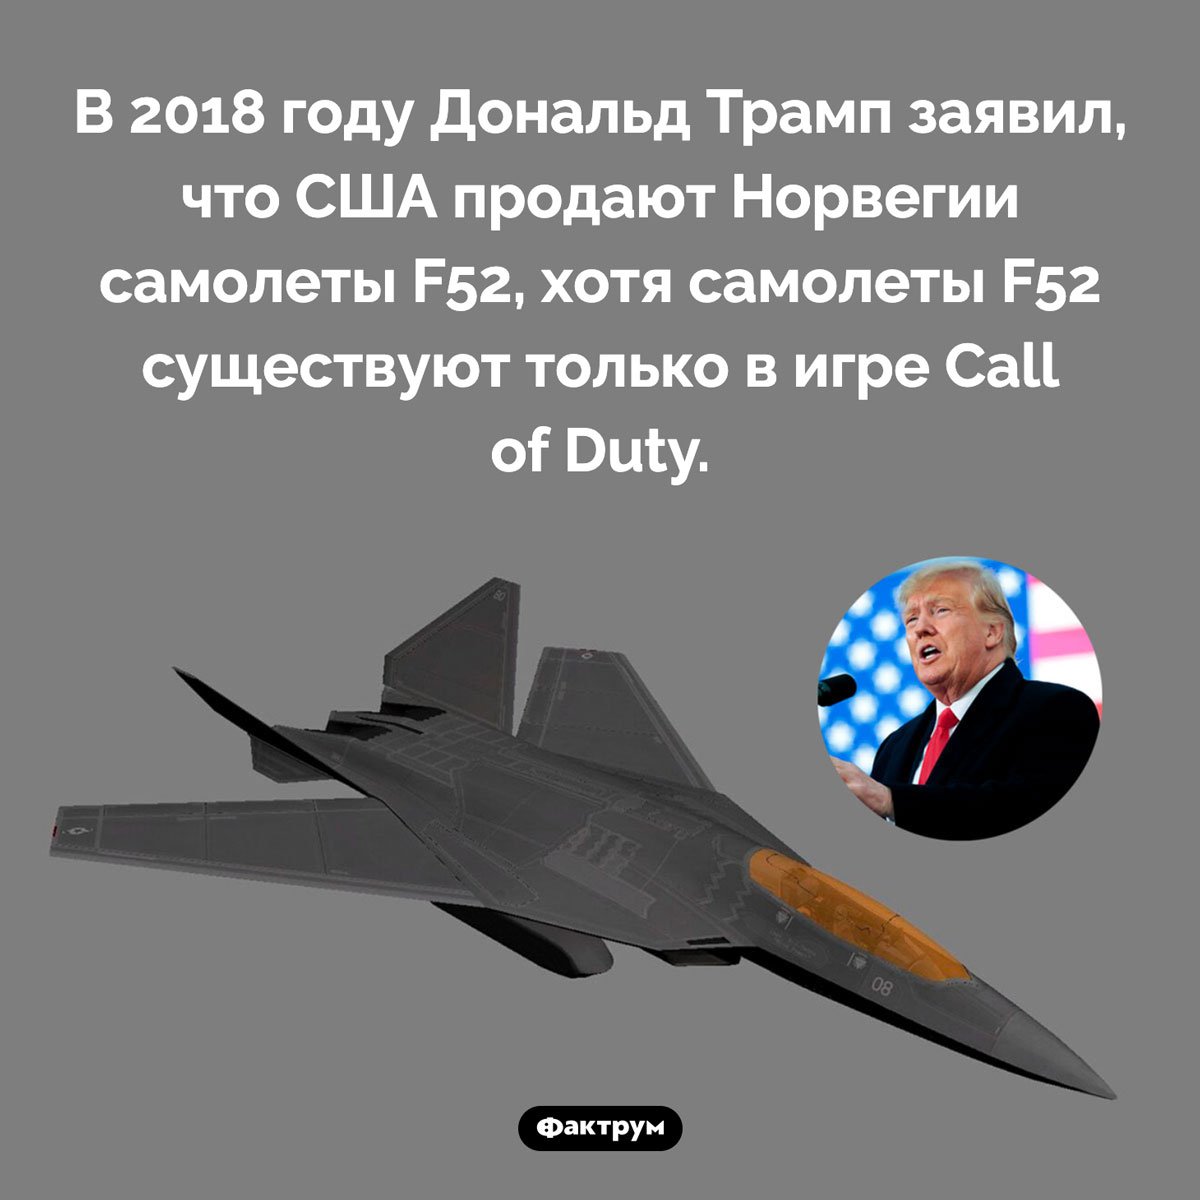 Дональд Трамп и несуществующие истребители. В 2018 году Дональд Трамп заявил, что США продают Норвегии самолеты F52, хотя самолеты F52 существуют только в игре Call of Duty.